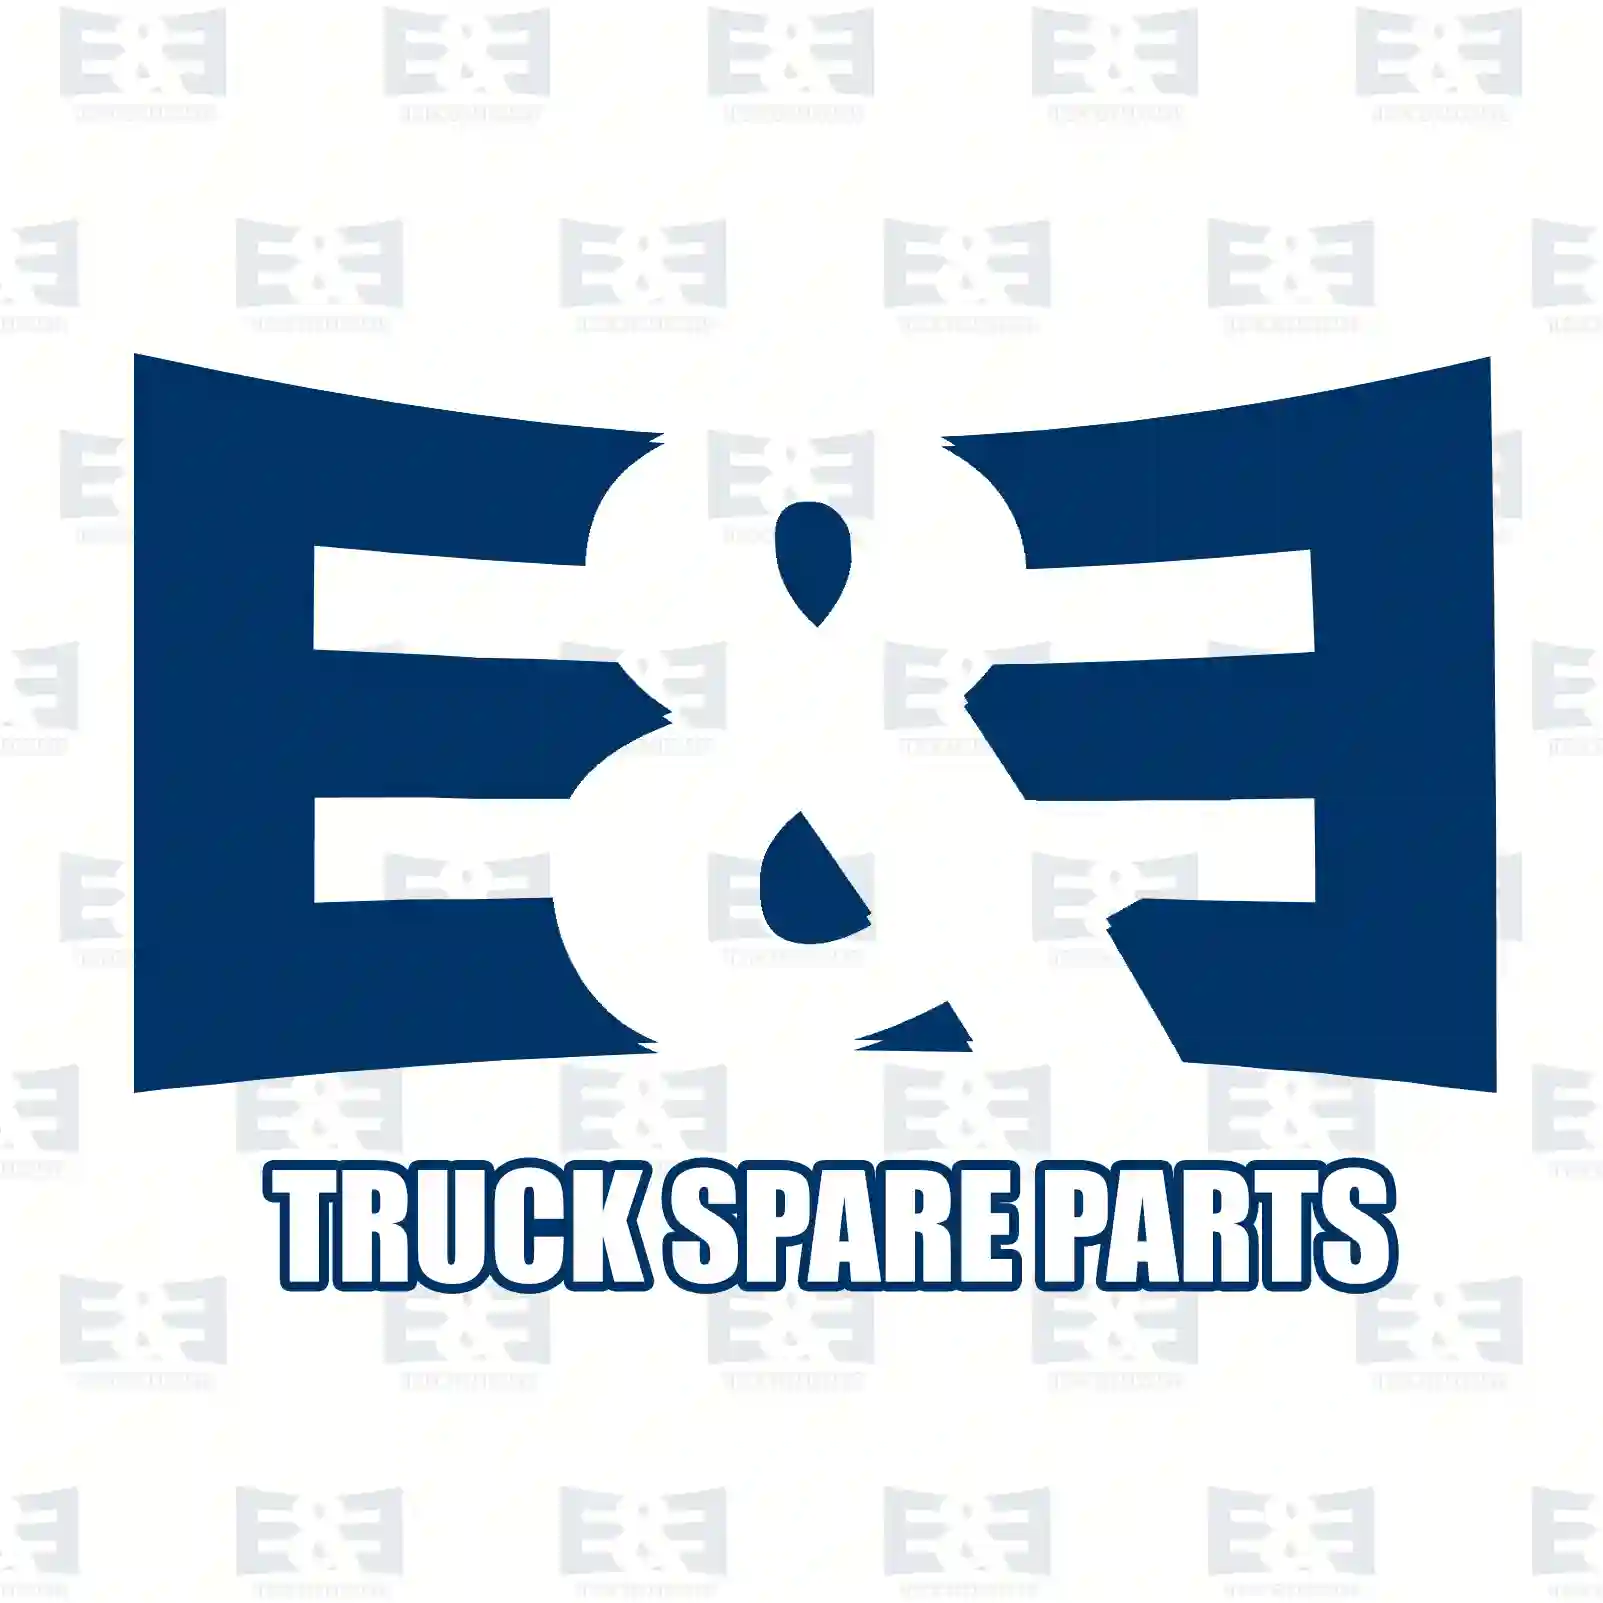 Water pump, 2E2203670, 0682747, 682747, 682747A, 682747R ||  2E2203670 E&E Truck Spare Parts | Truck Spare Parts, Auotomotive Spare Parts Water pump, 2E2203670, 0682747, 682747, 682747A, 682747R ||  2E2203670 E&E Truck Spare Parts | Truck Spare Parts, Auotomotive Spare Parts